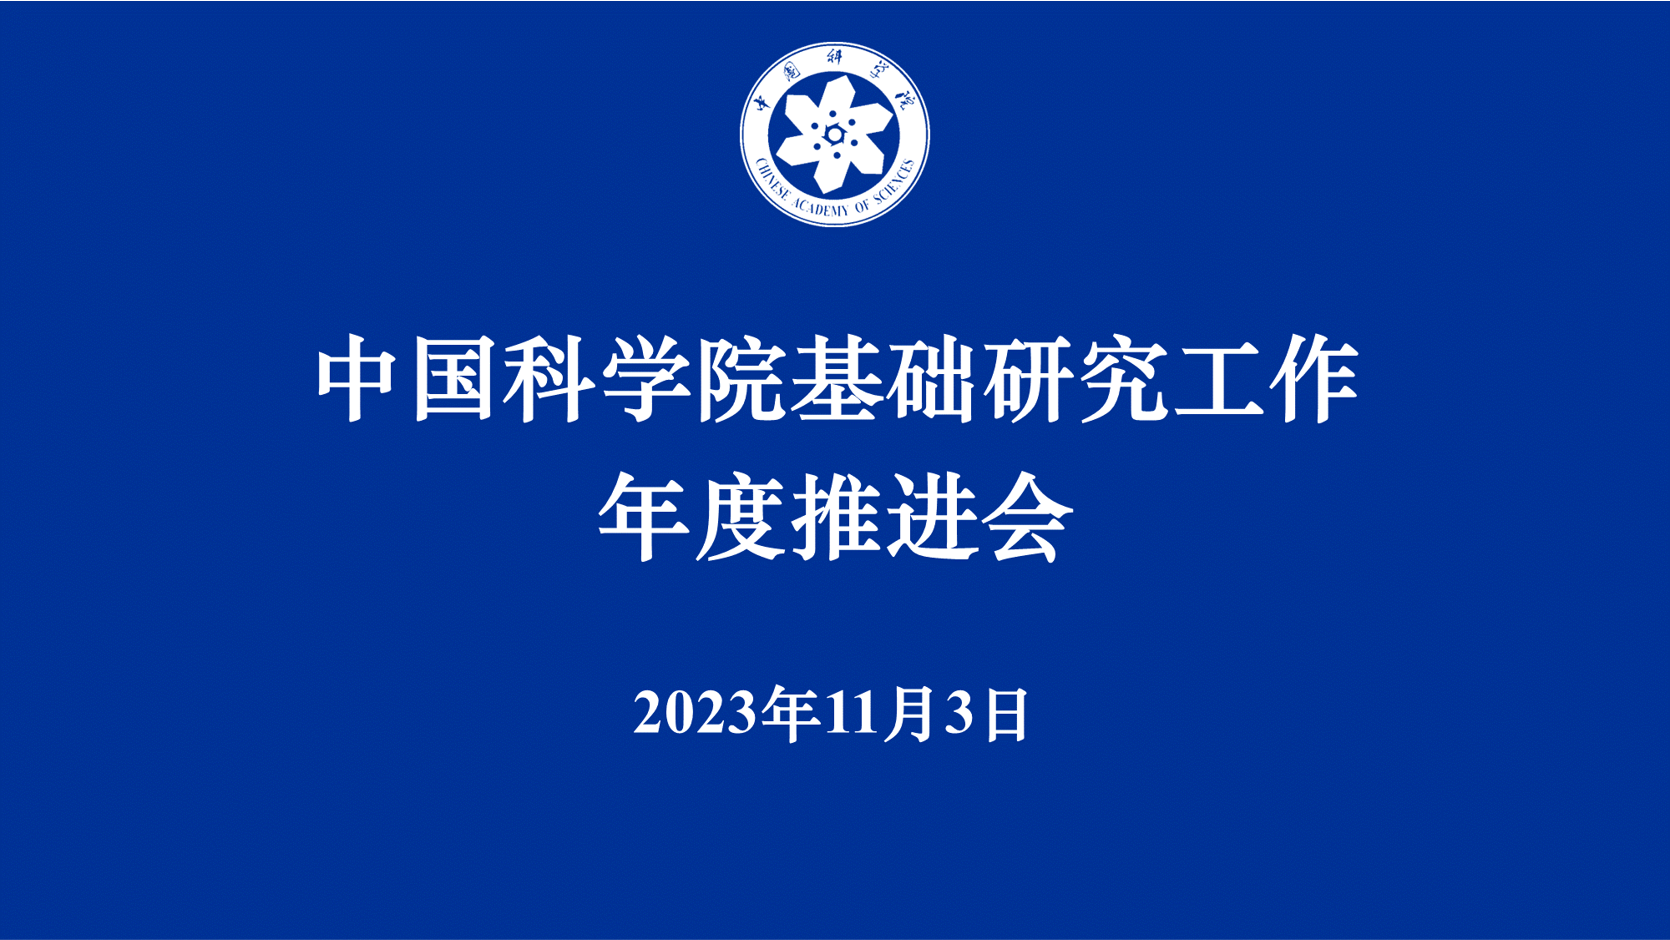 中国科学院召开基础研究工作年度推进会